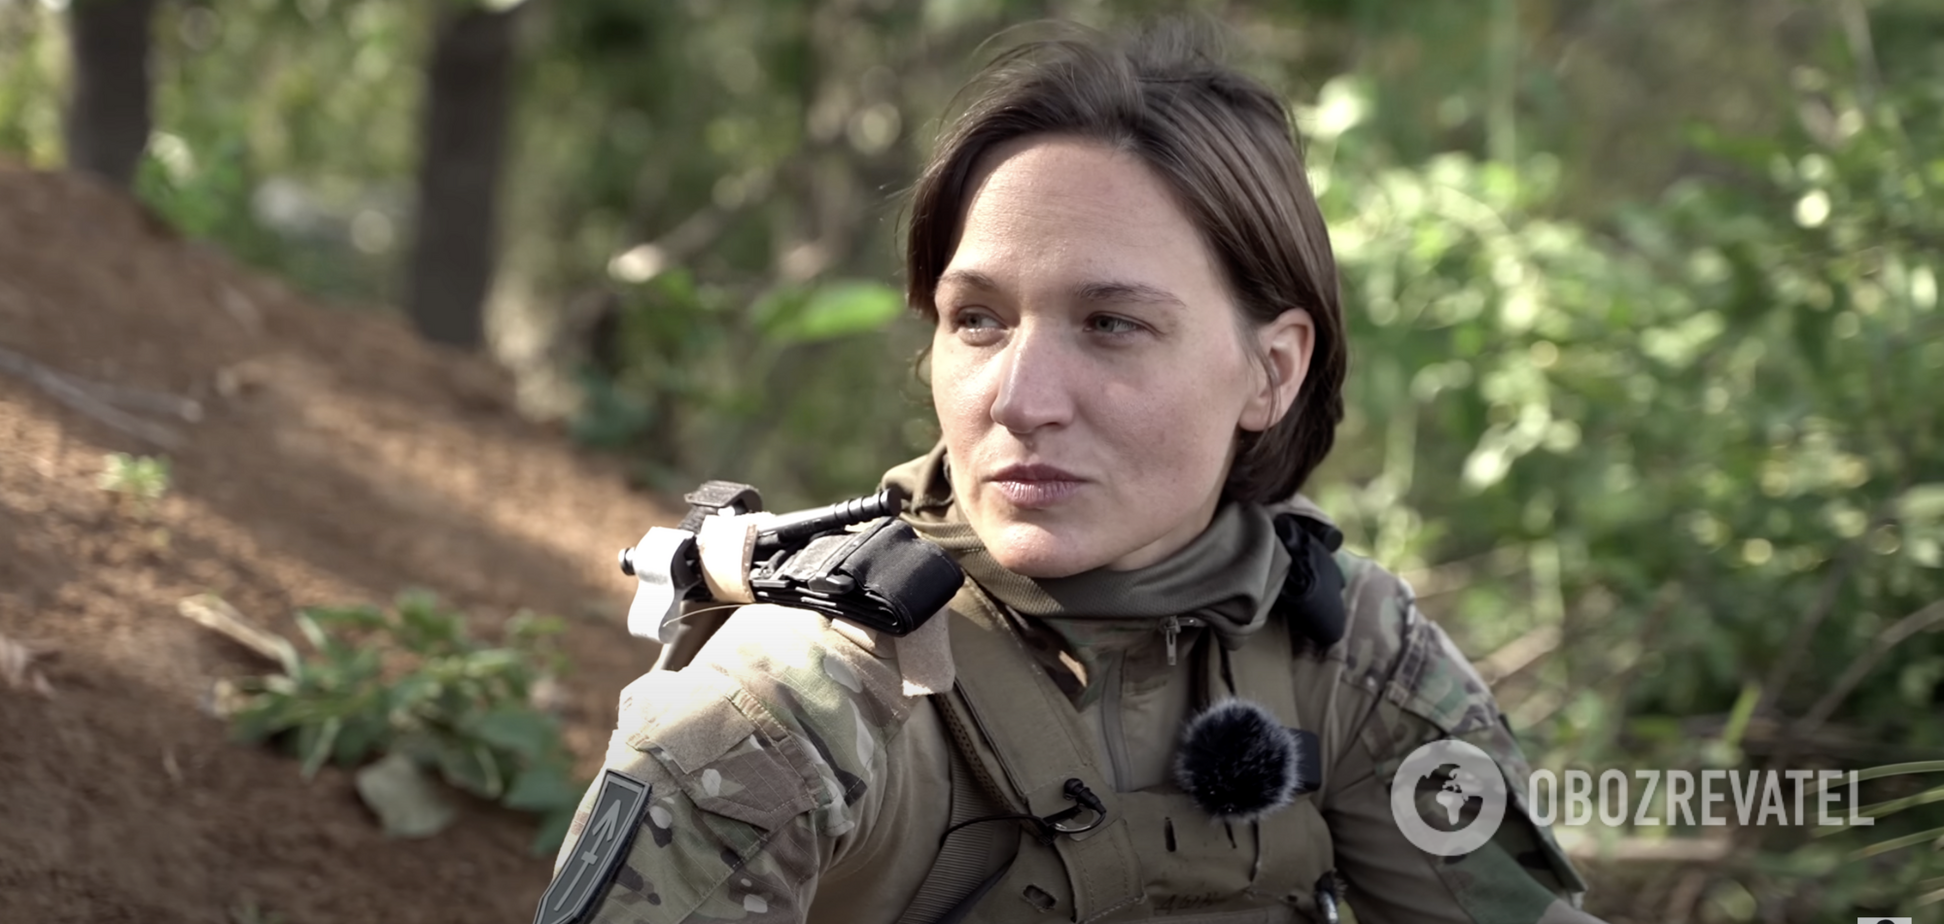 Украинская защитница Даша 'ДШК' раскритиковала накрашенных женщин в форме ВСУ: война – это не кино!